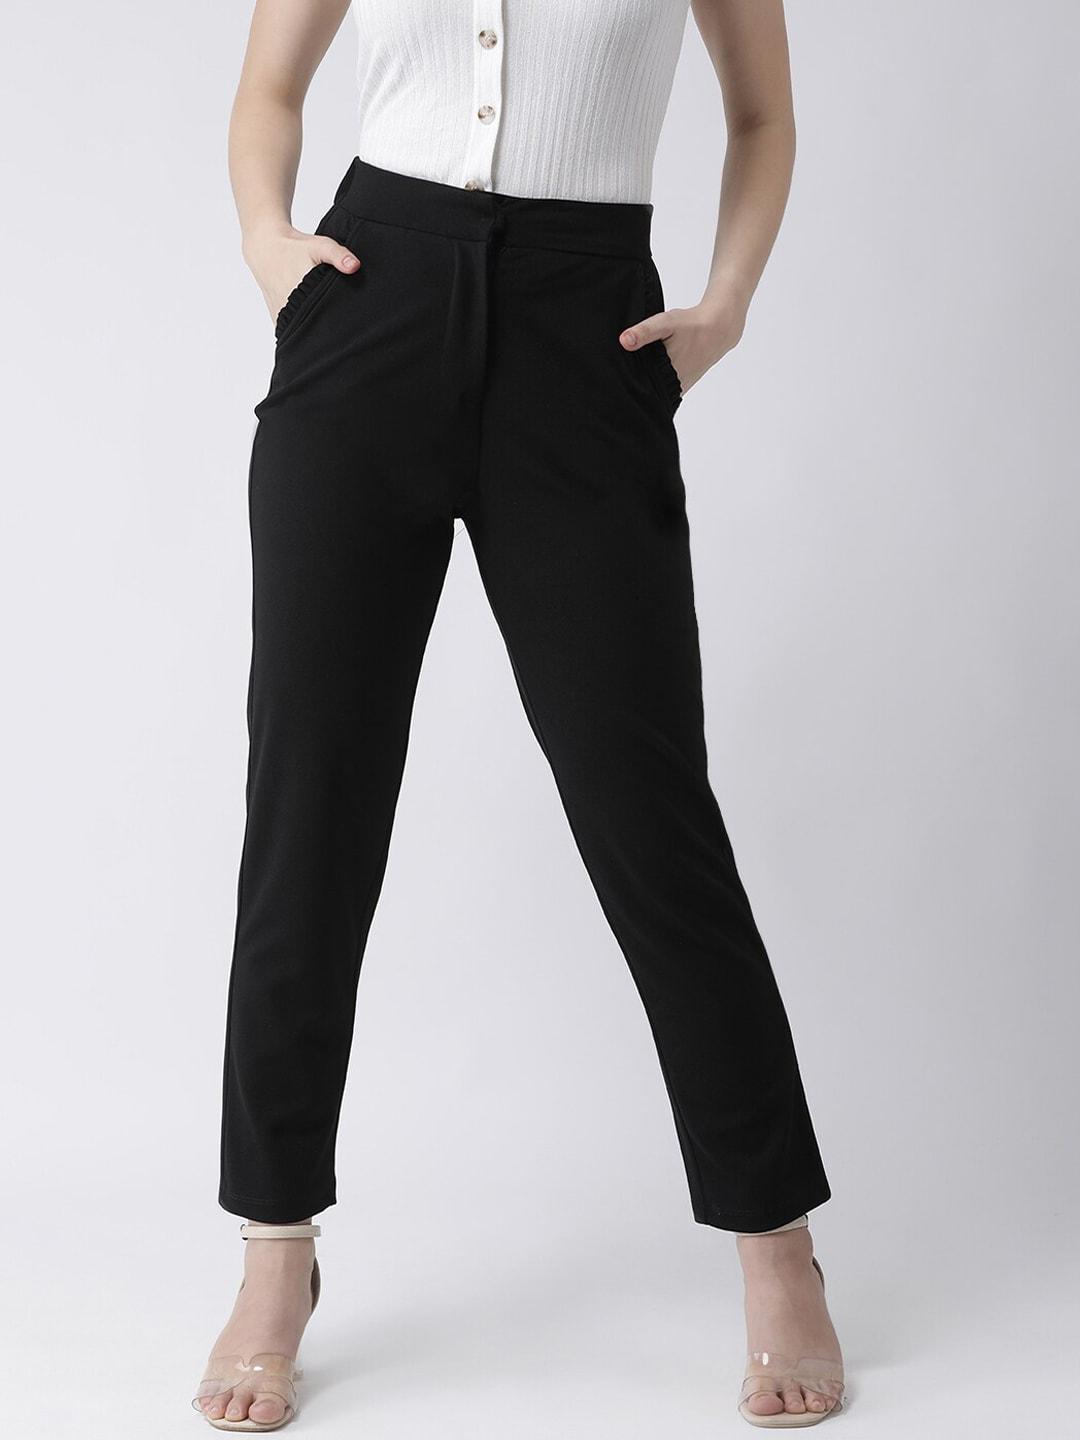 kassually-women-black-trousers